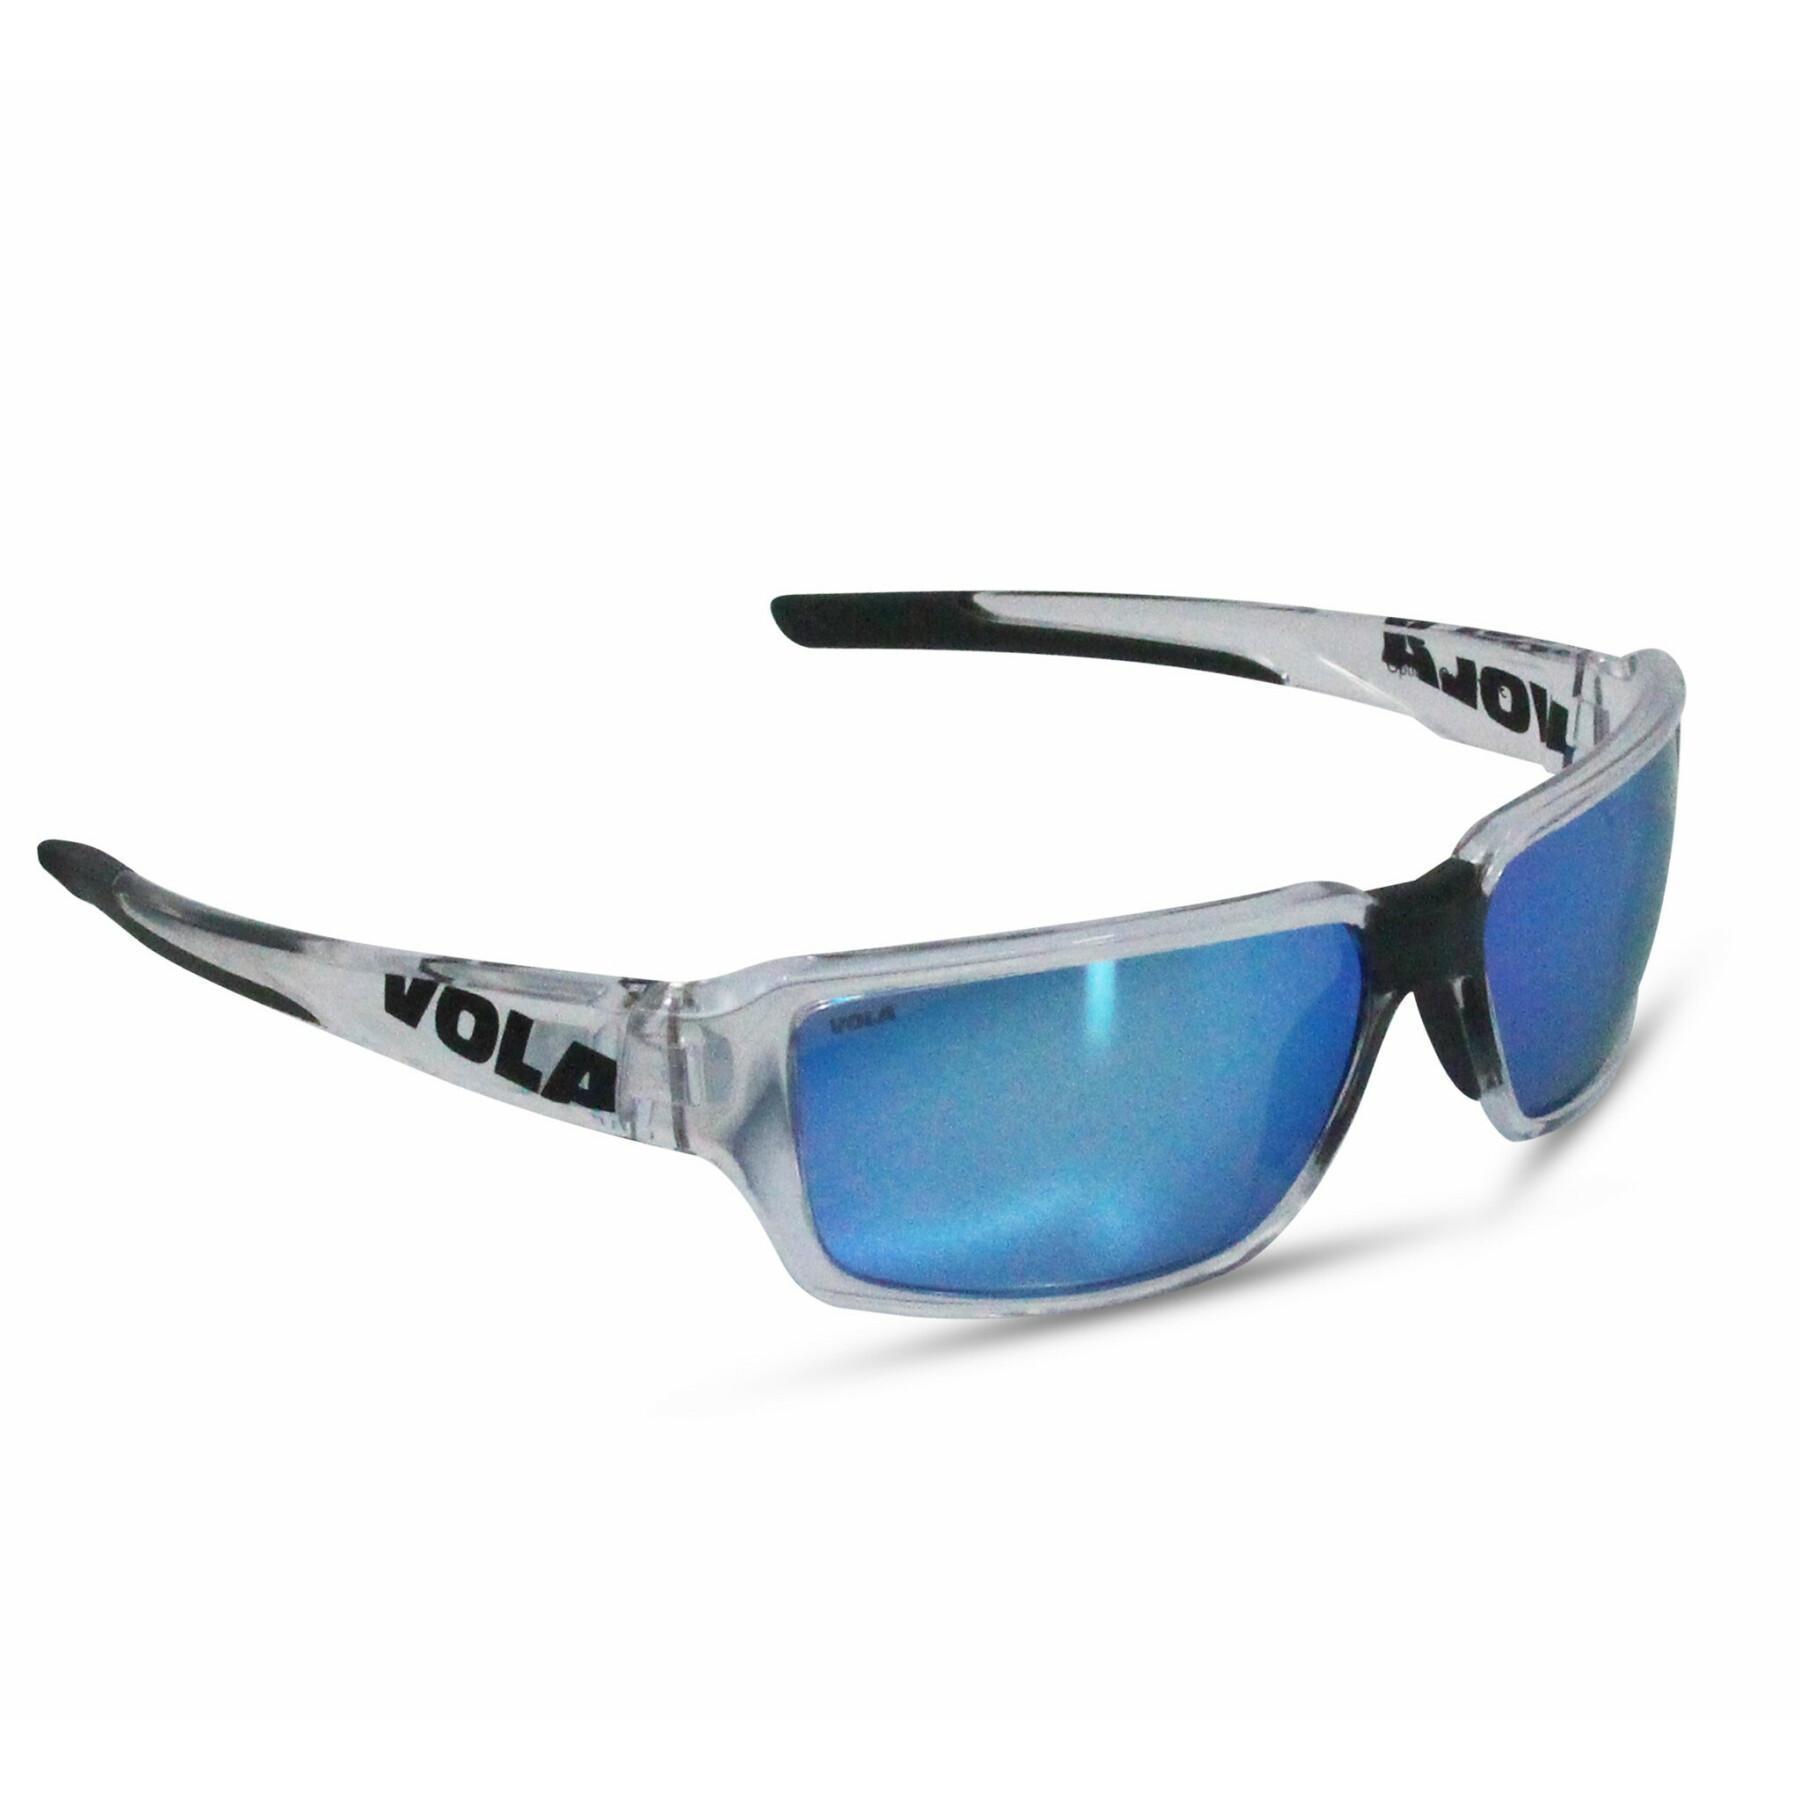 Sunglasses Vola Fusion